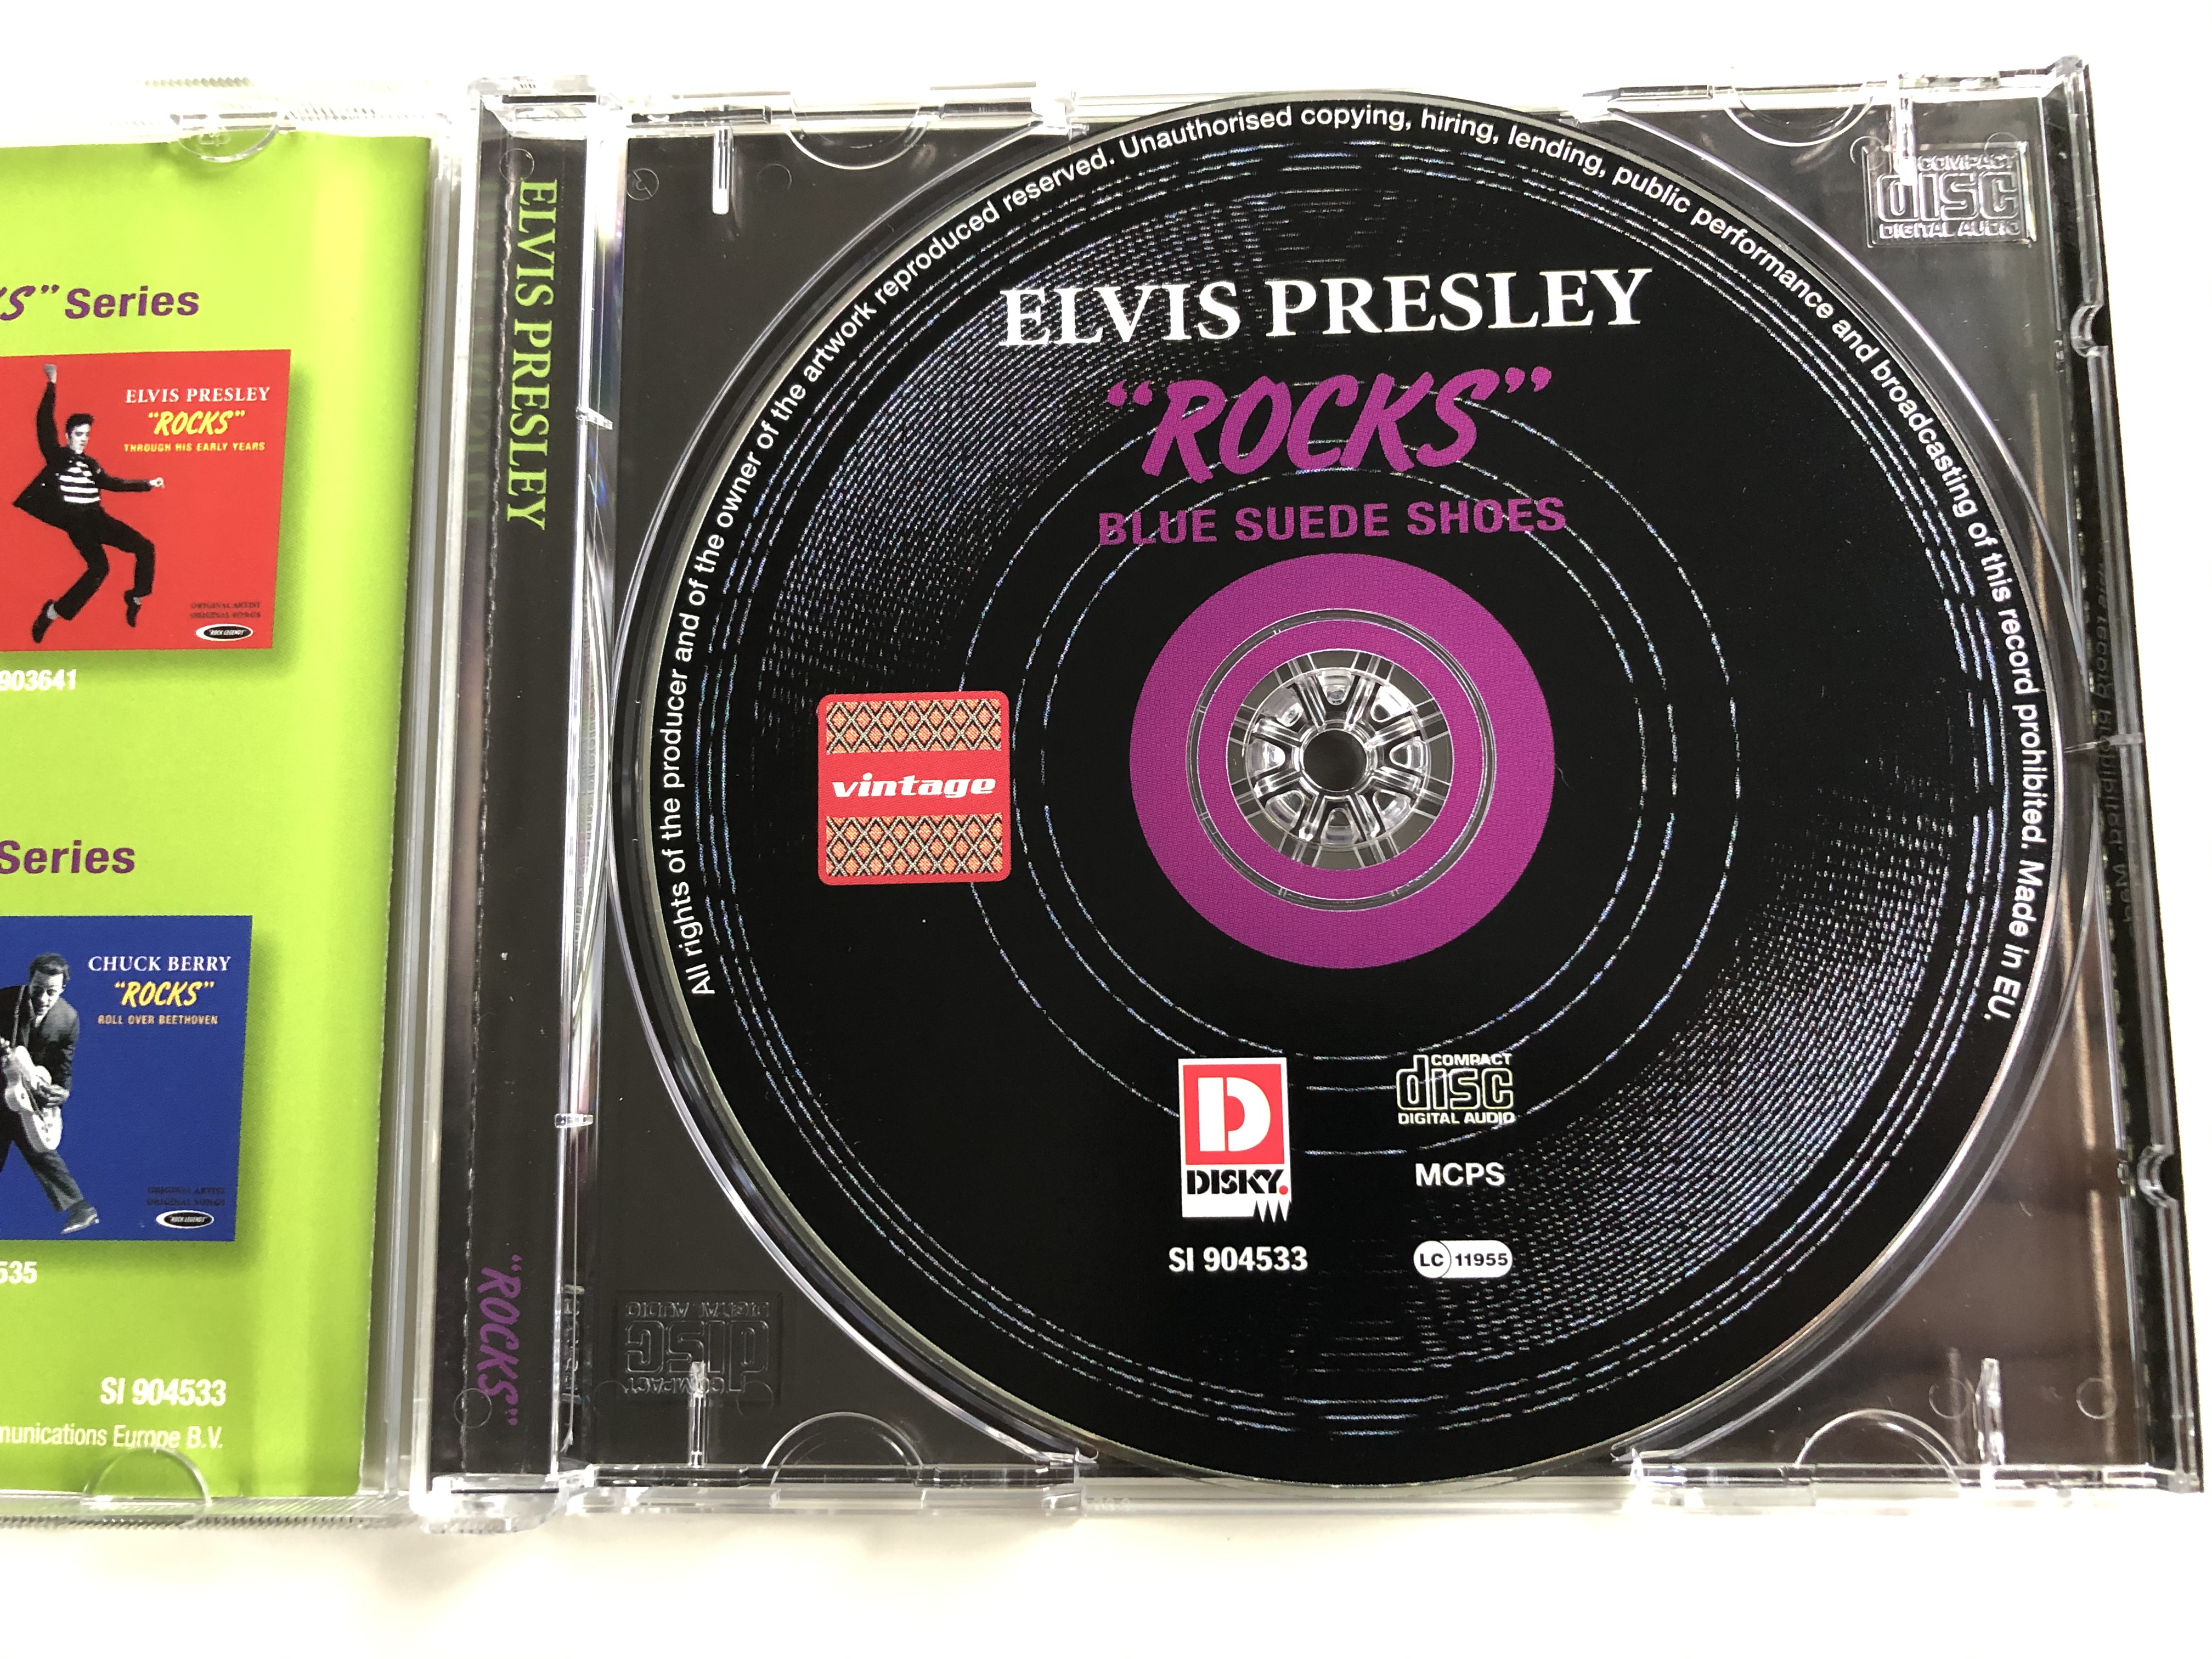 elvis-presley-rocks-blue-suede-shoes-original-artist-original-songs-disky-audio-cd-2007-si-904533-3-.jpg